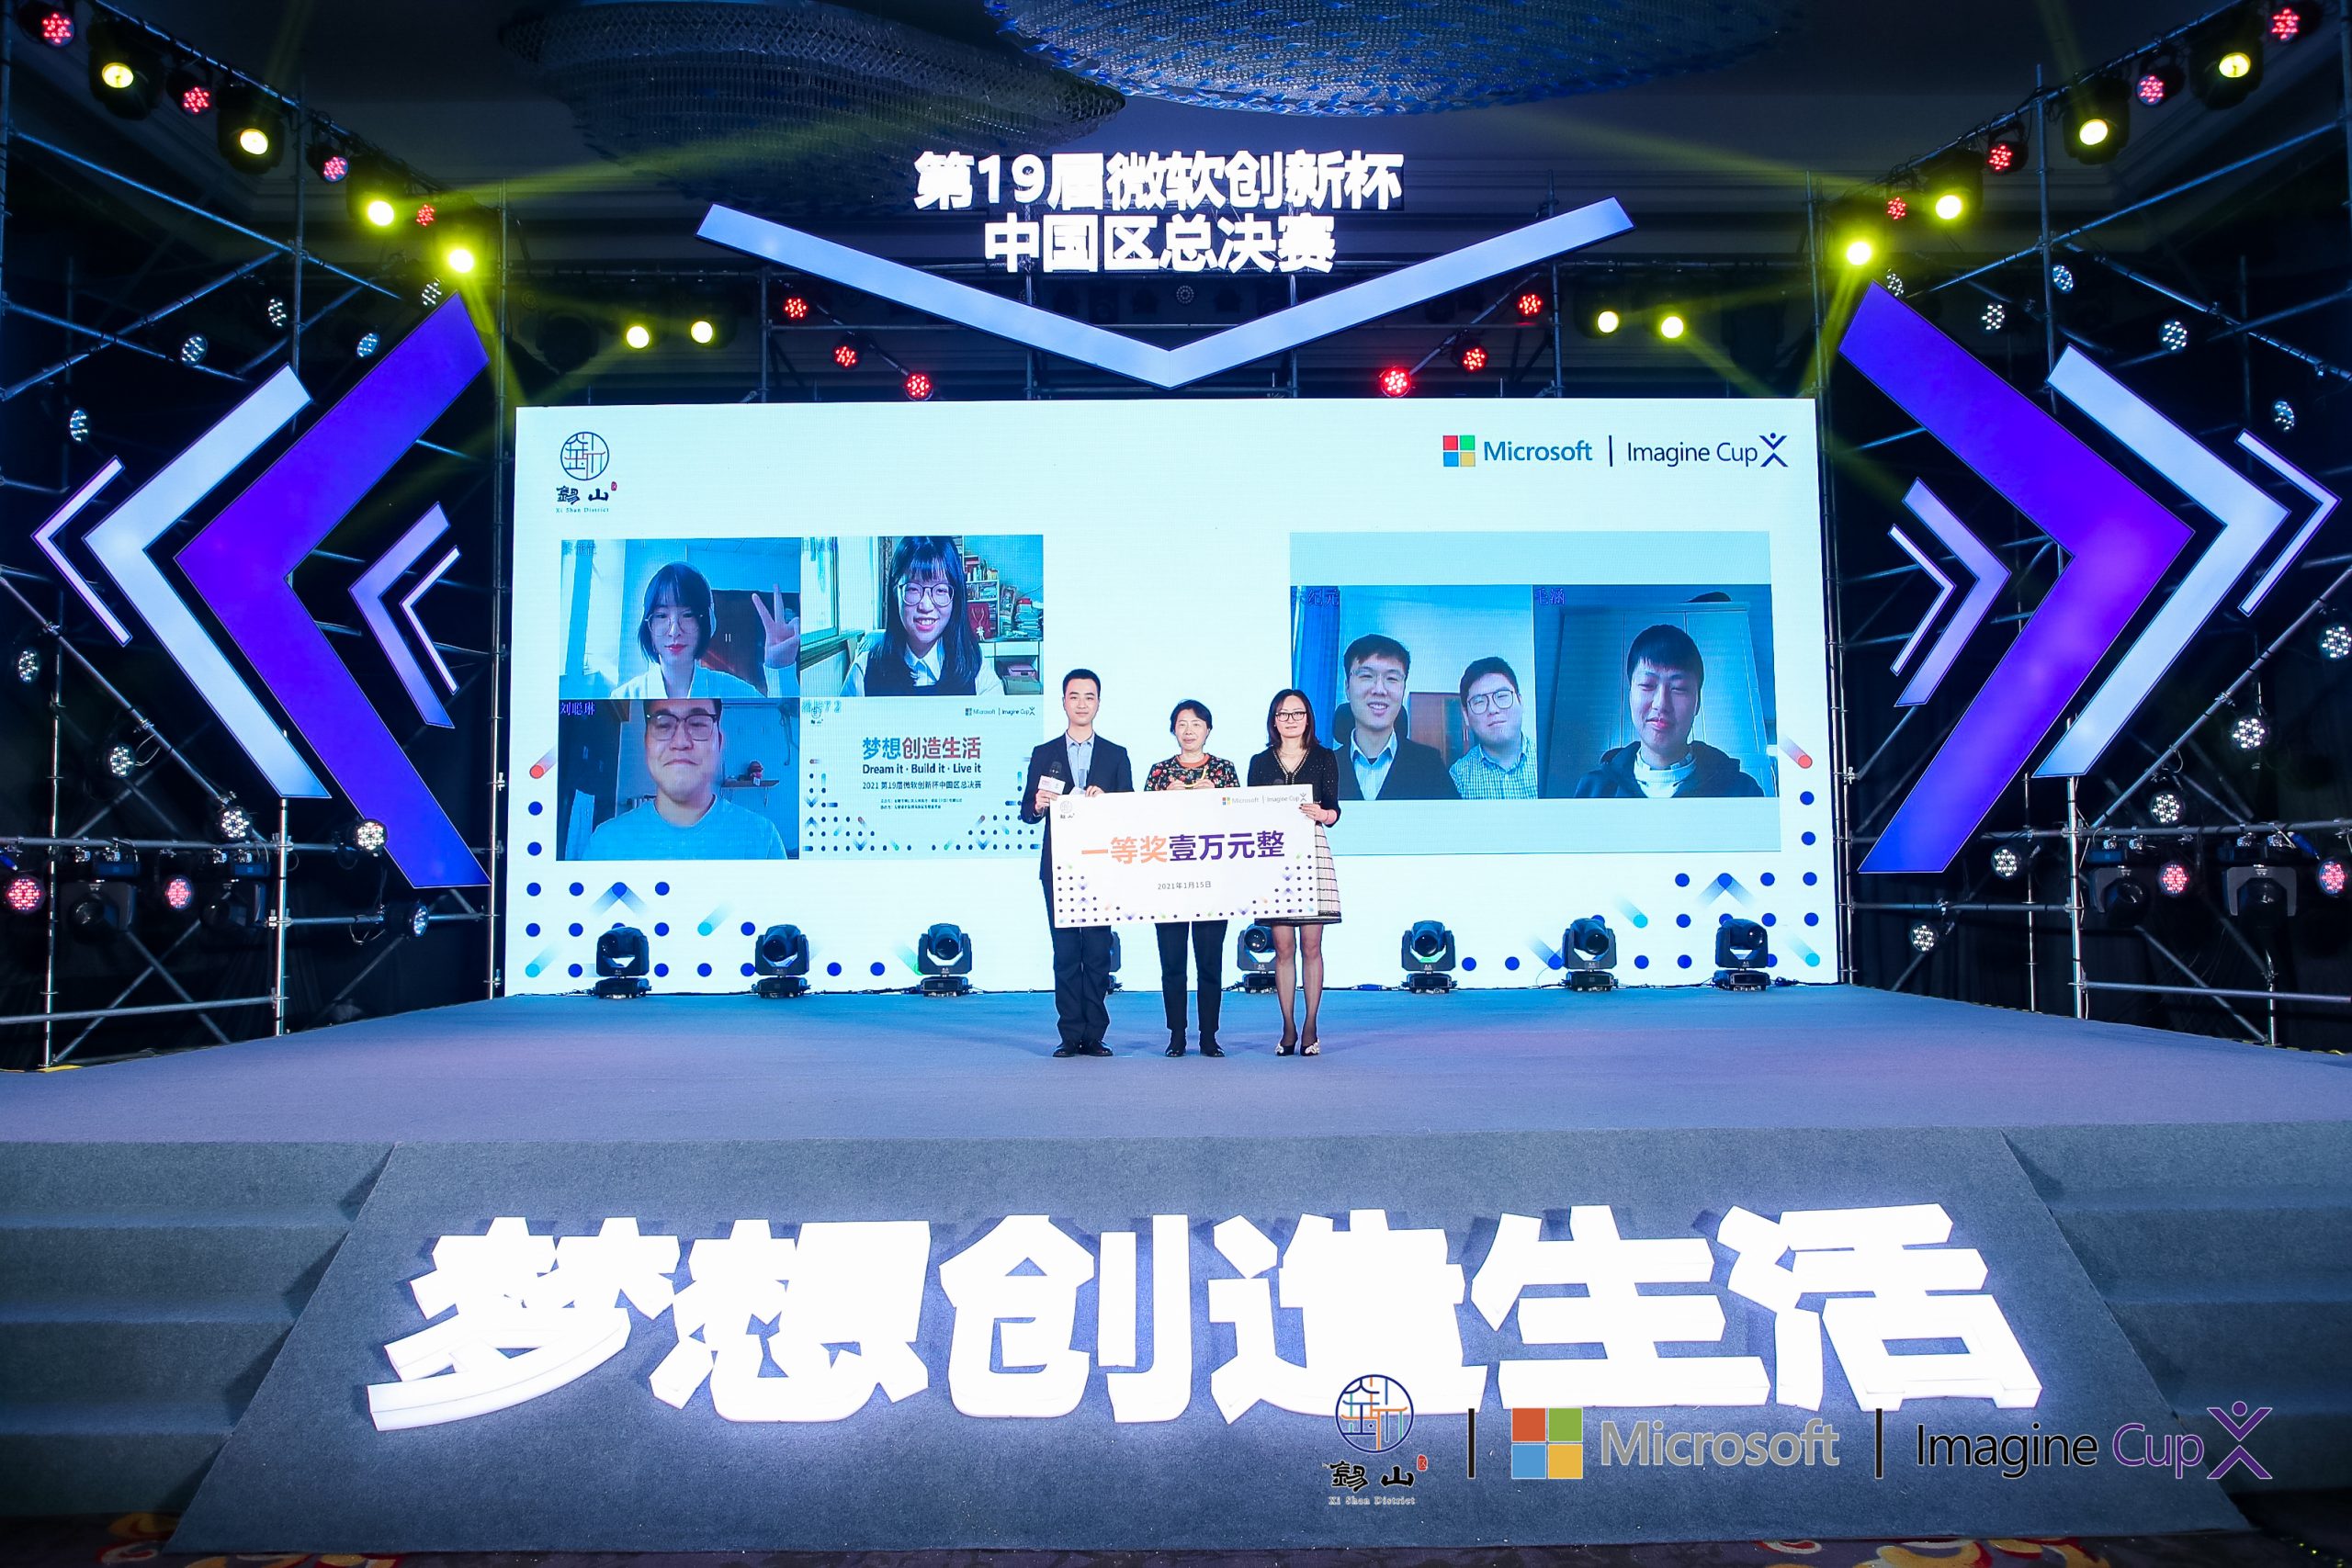 北京赛区 DataMasker 团队和陕西赛区 Roball Go 团队夺冠颁奖云合影